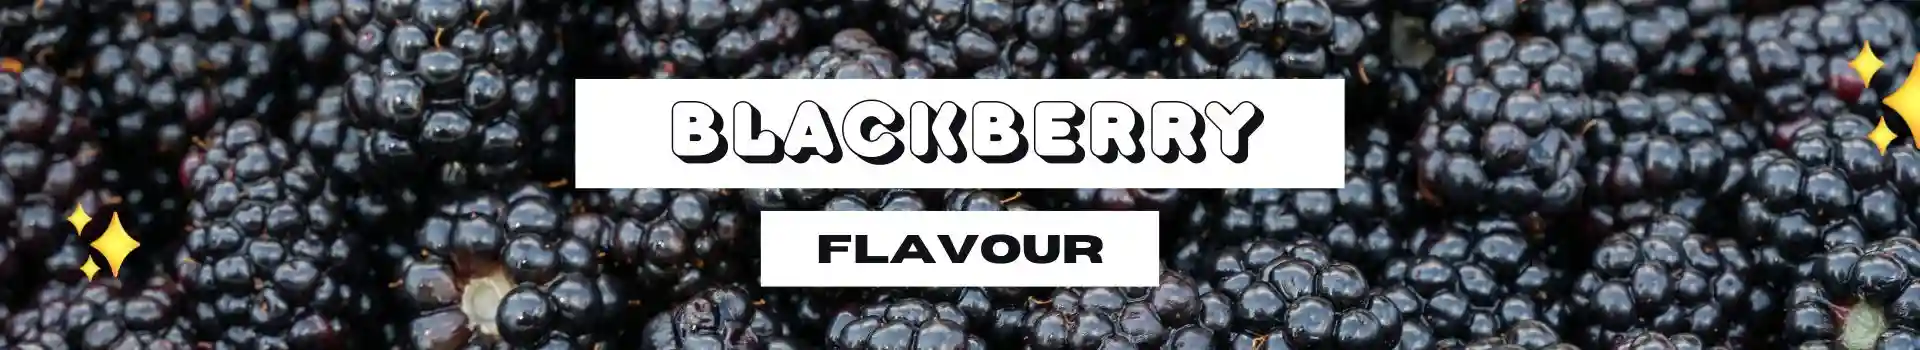 IGET Vape Flavours - Blackberry